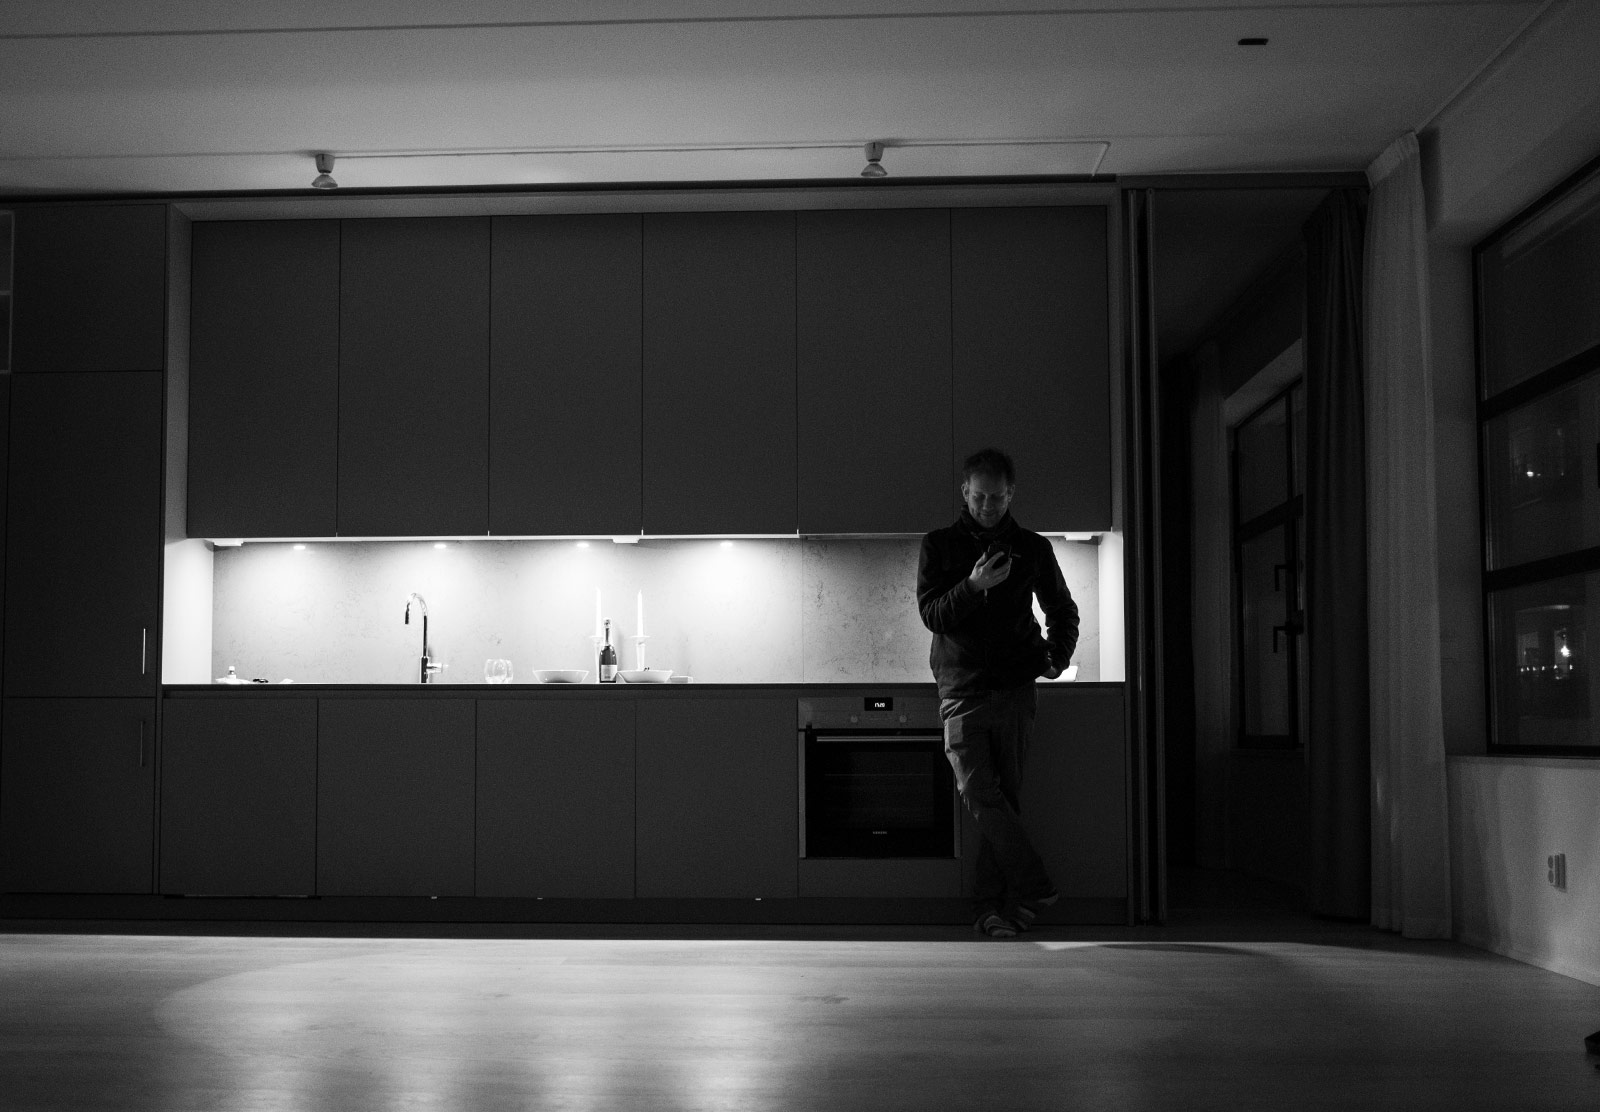 Man stood in empty kitchen